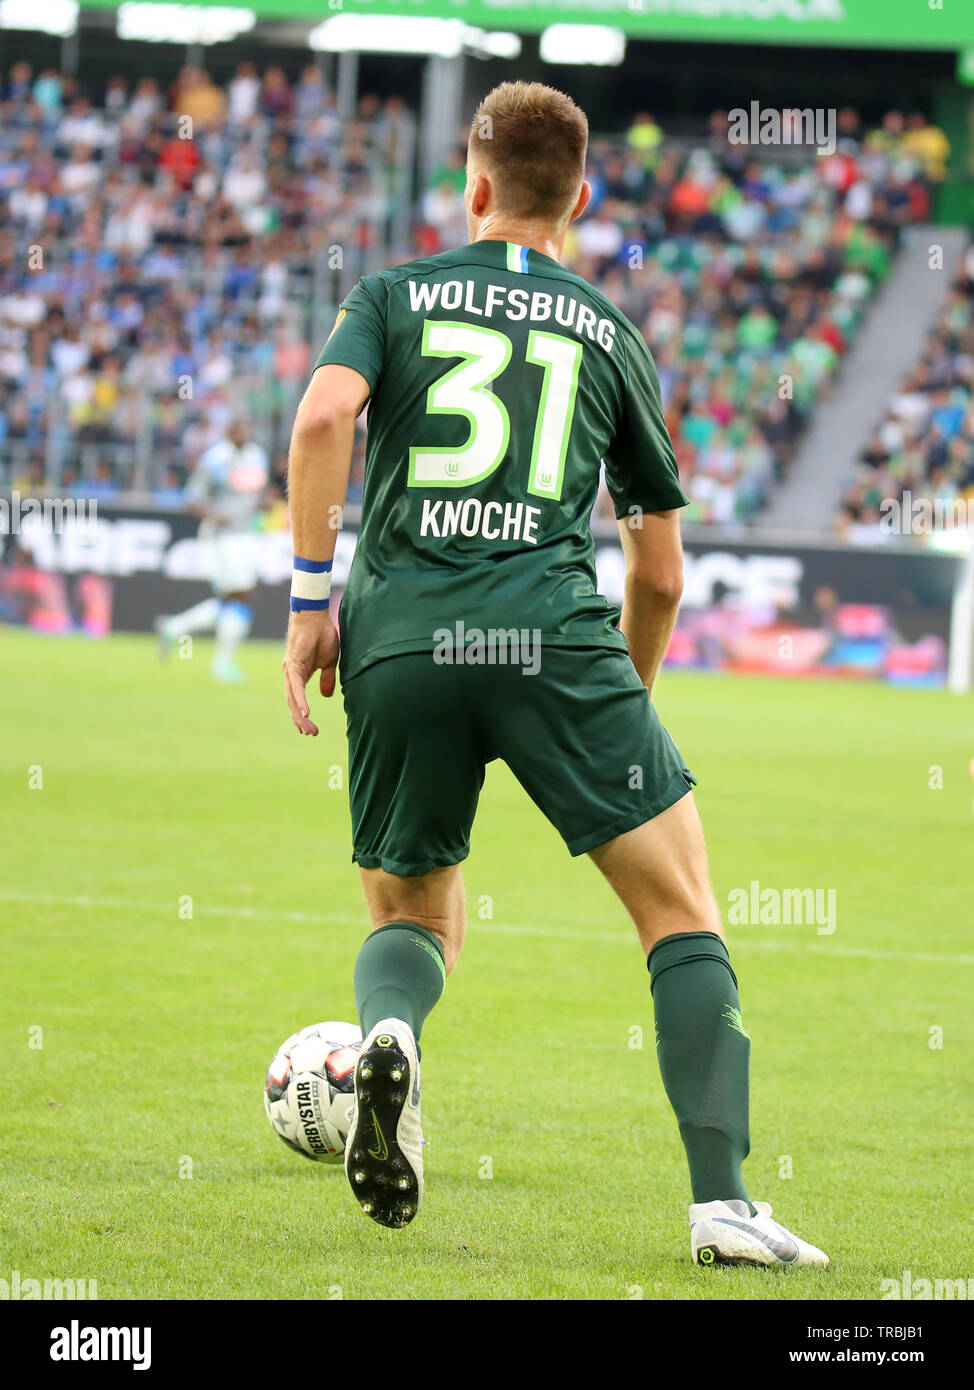 Wolfsburg, Germania, 11 agosto 2018: giocatore di football Robin Knoche in azione durante una partita con il numero 31 Vfl Wolfsburg shirt su 2018 - 2019 stagione. Foto Stock